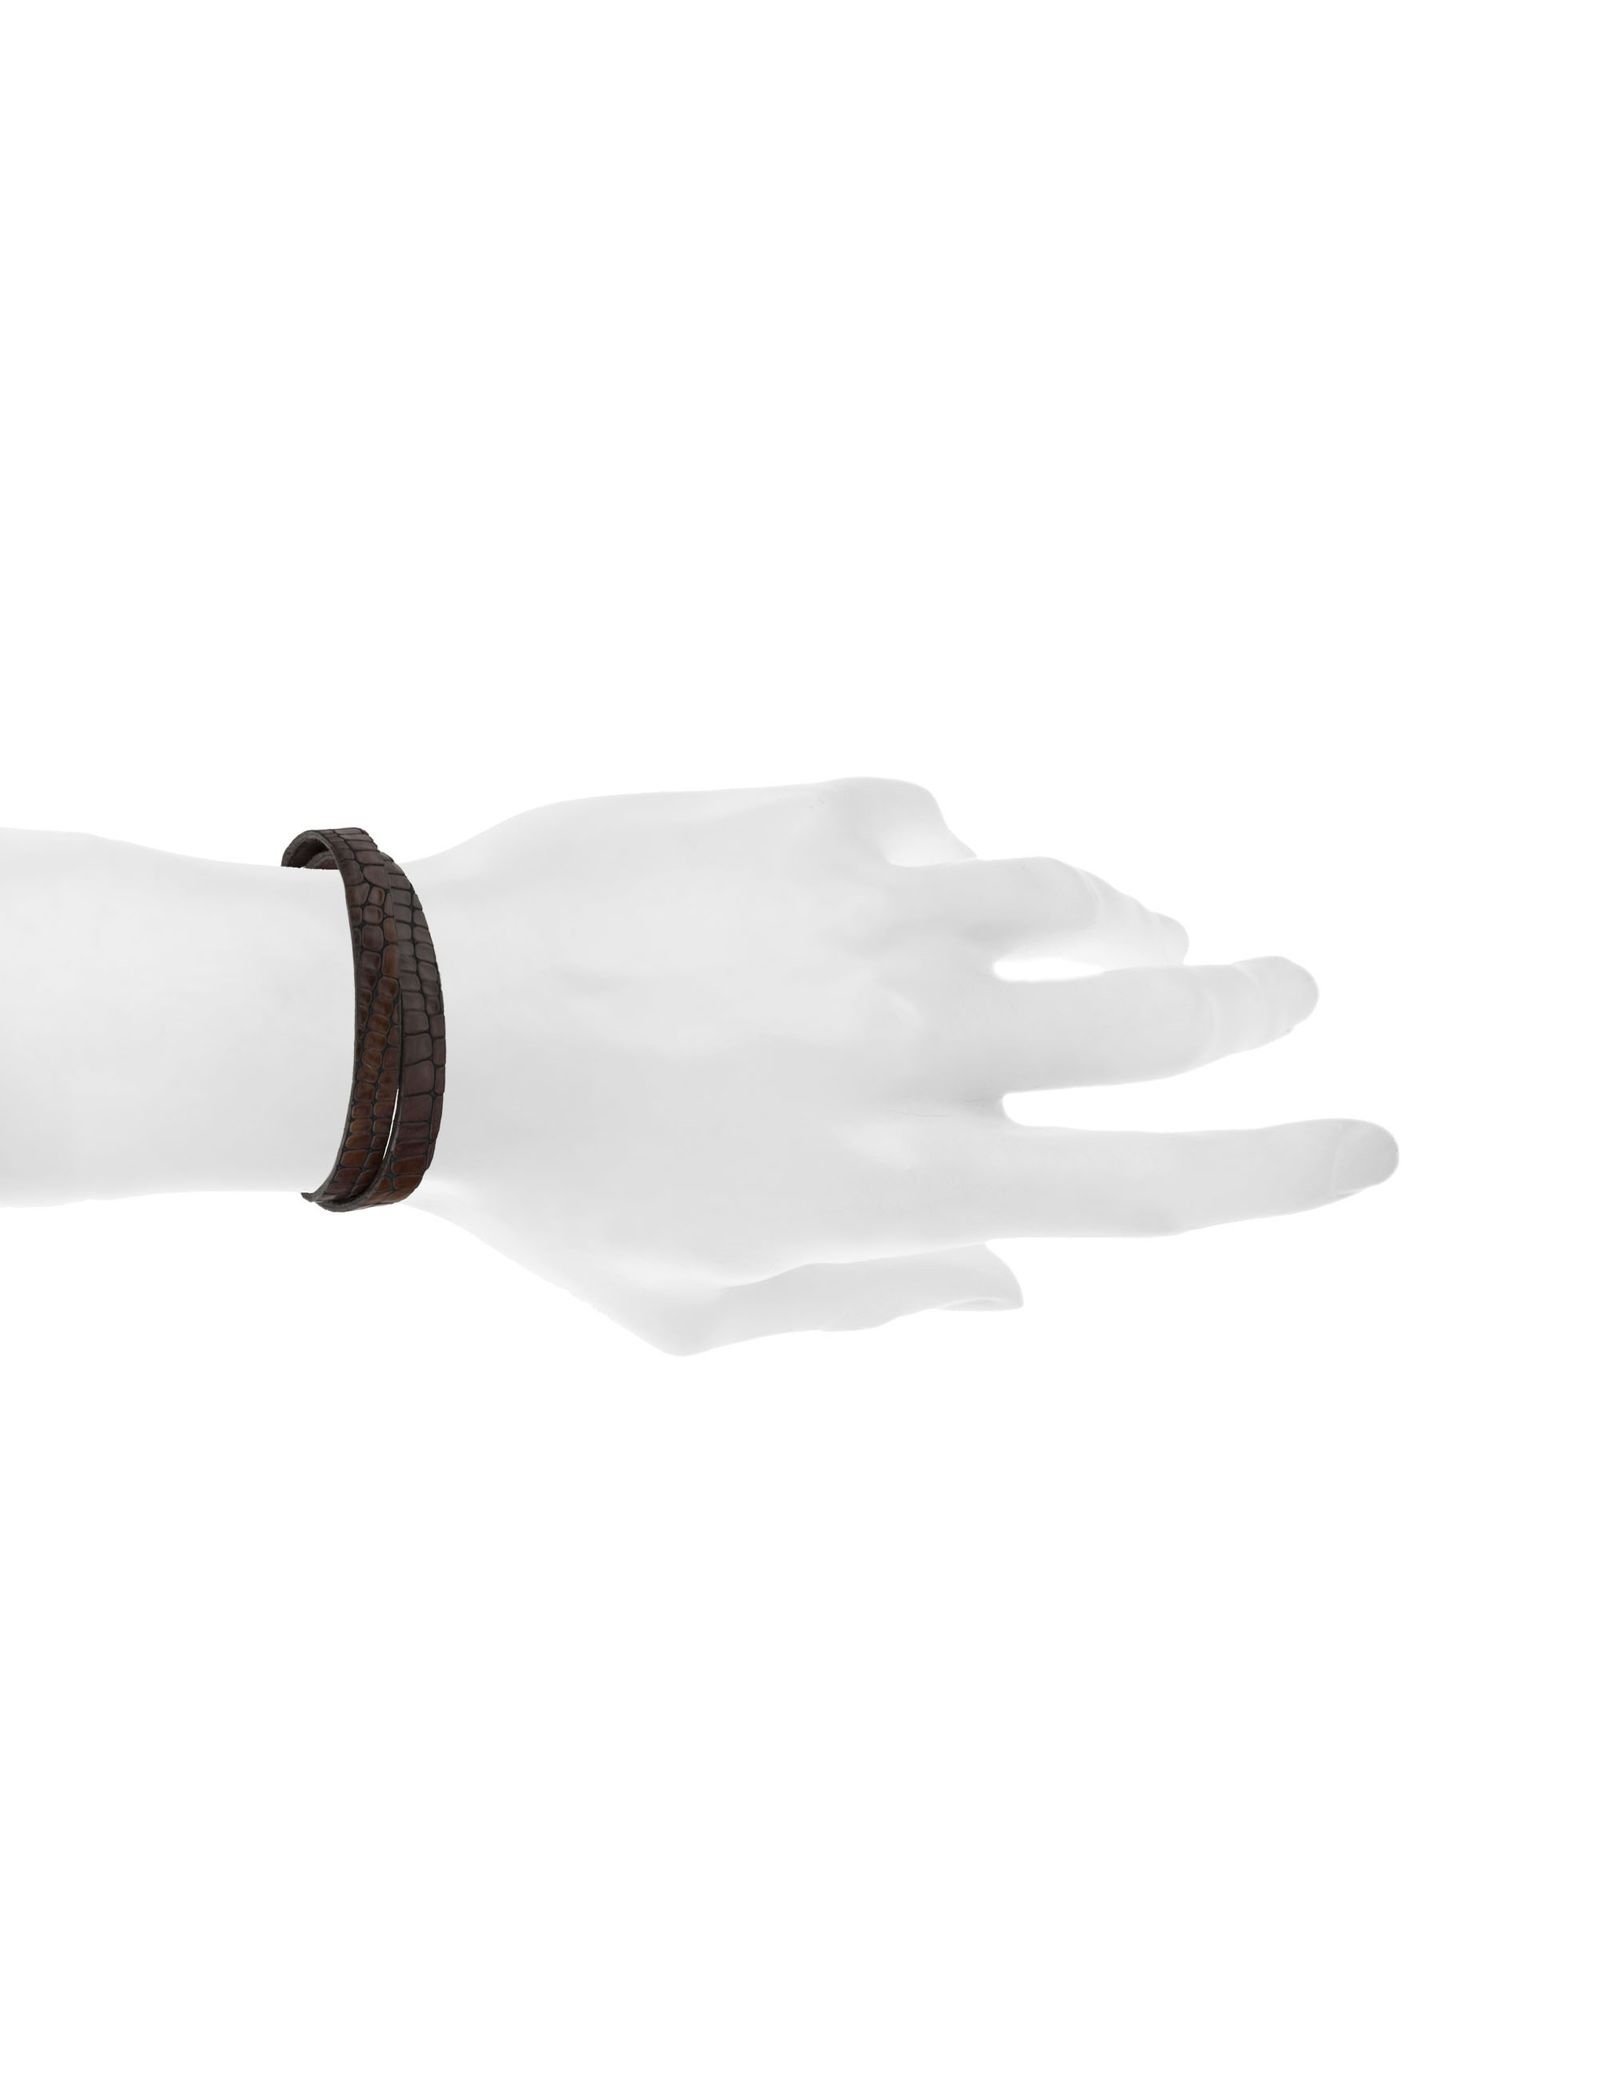 دستبند چرم مردانه - ماکو دیزاین سایز 43 cm - قهوه اي - 6